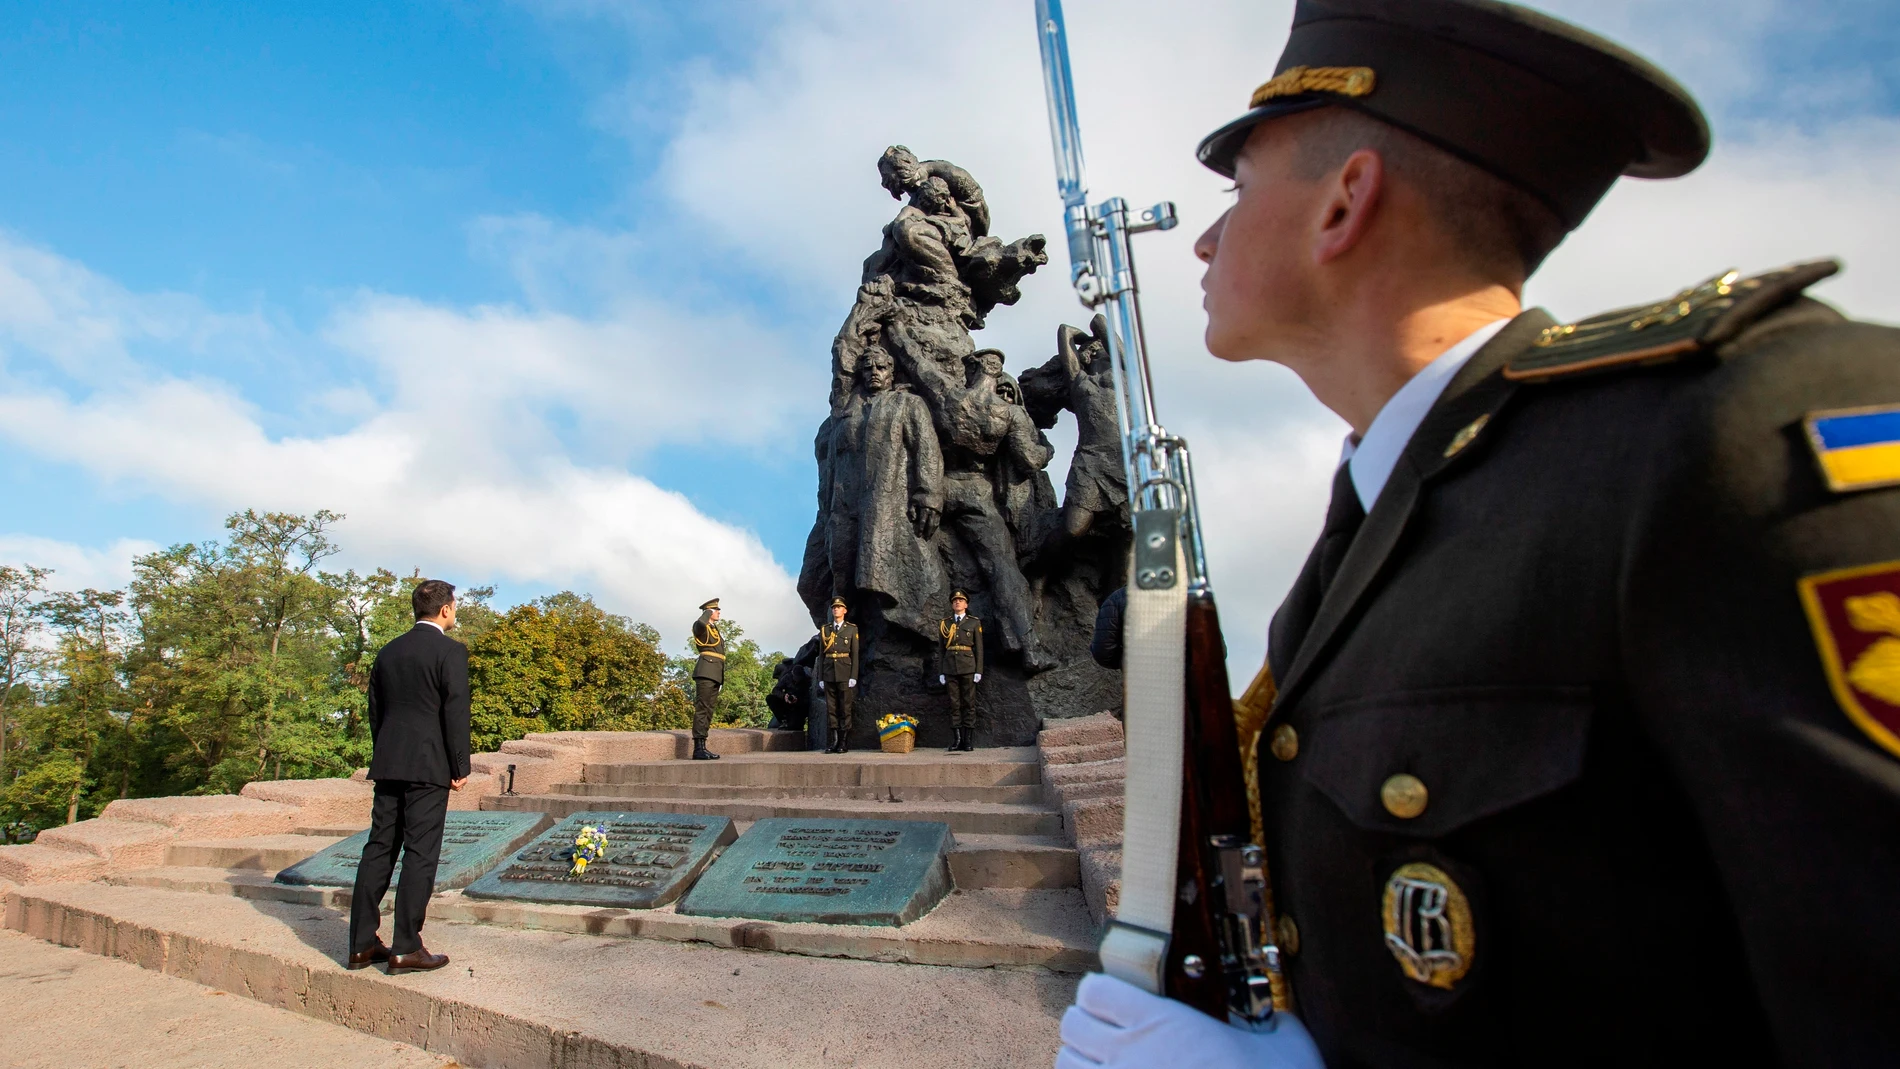 29/09/2021- Hace solo 5 meses, el presidente de Ucrania, Volodimir Zelenski, protagonizó una ofrenda floral ante el monumento a las víctimas de la masacre nazi en Babi Yar, Kiev, Ucrania.